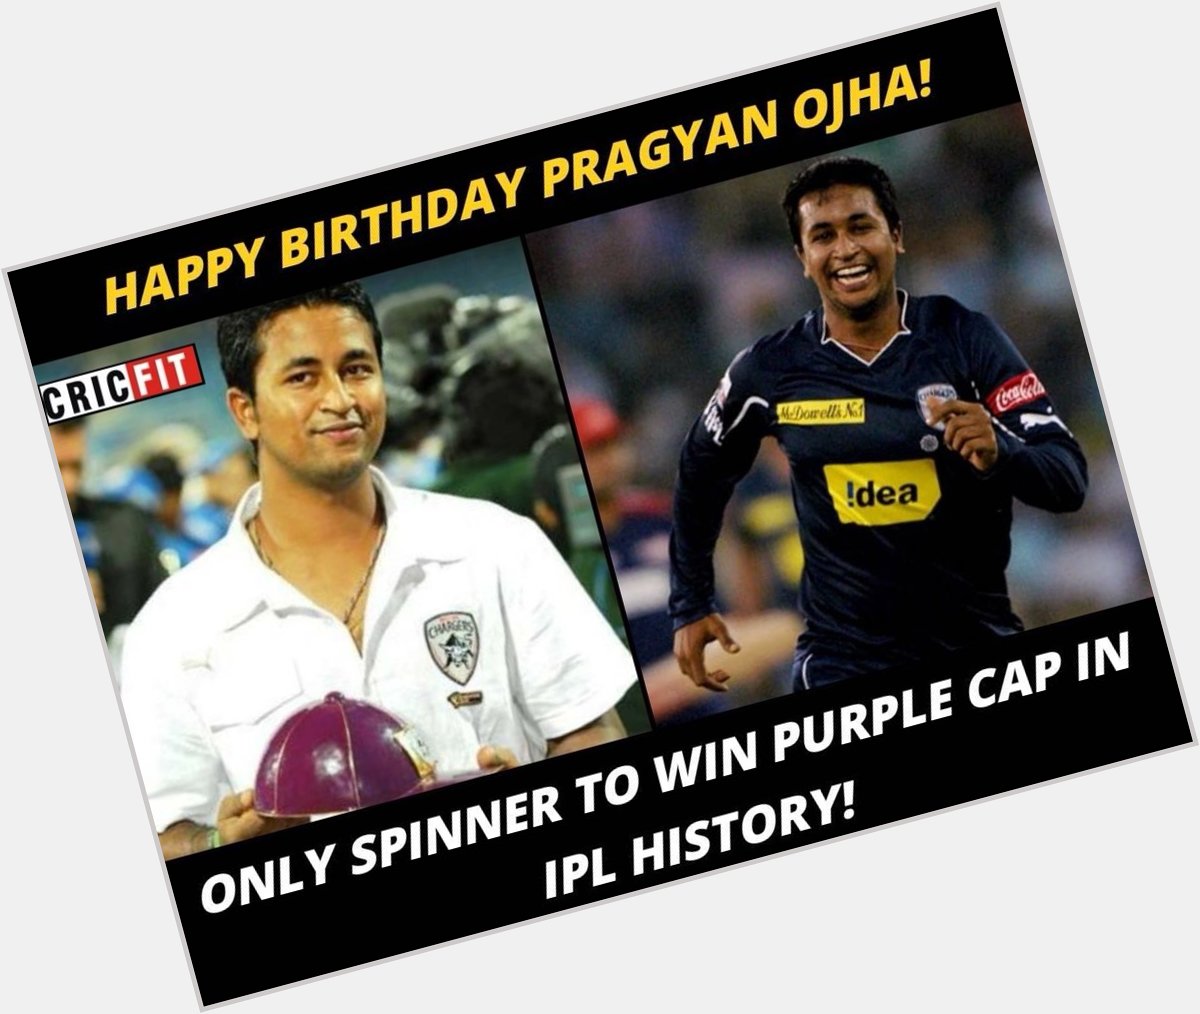 Happy Birthday Pragyan Ojha! 